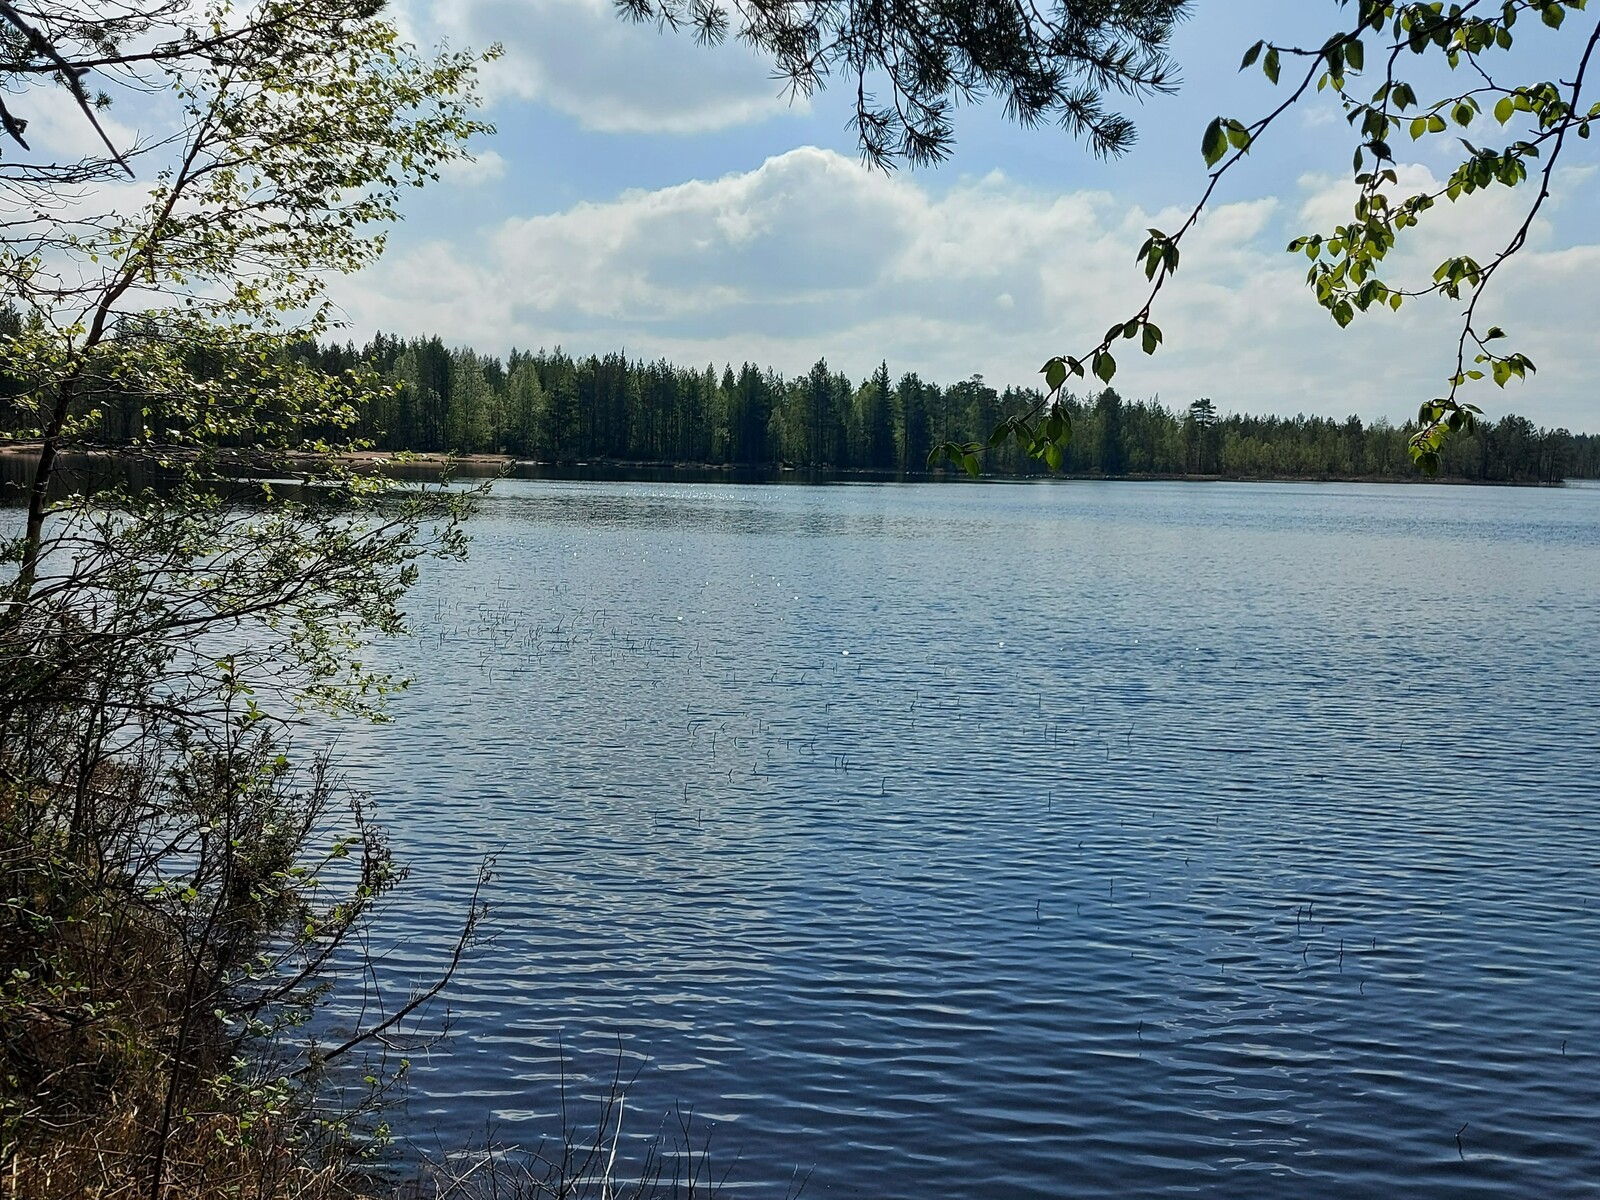 Näkymä järvelle, jossa näkyy tontin lähellä sijaitsevan uimarannan.